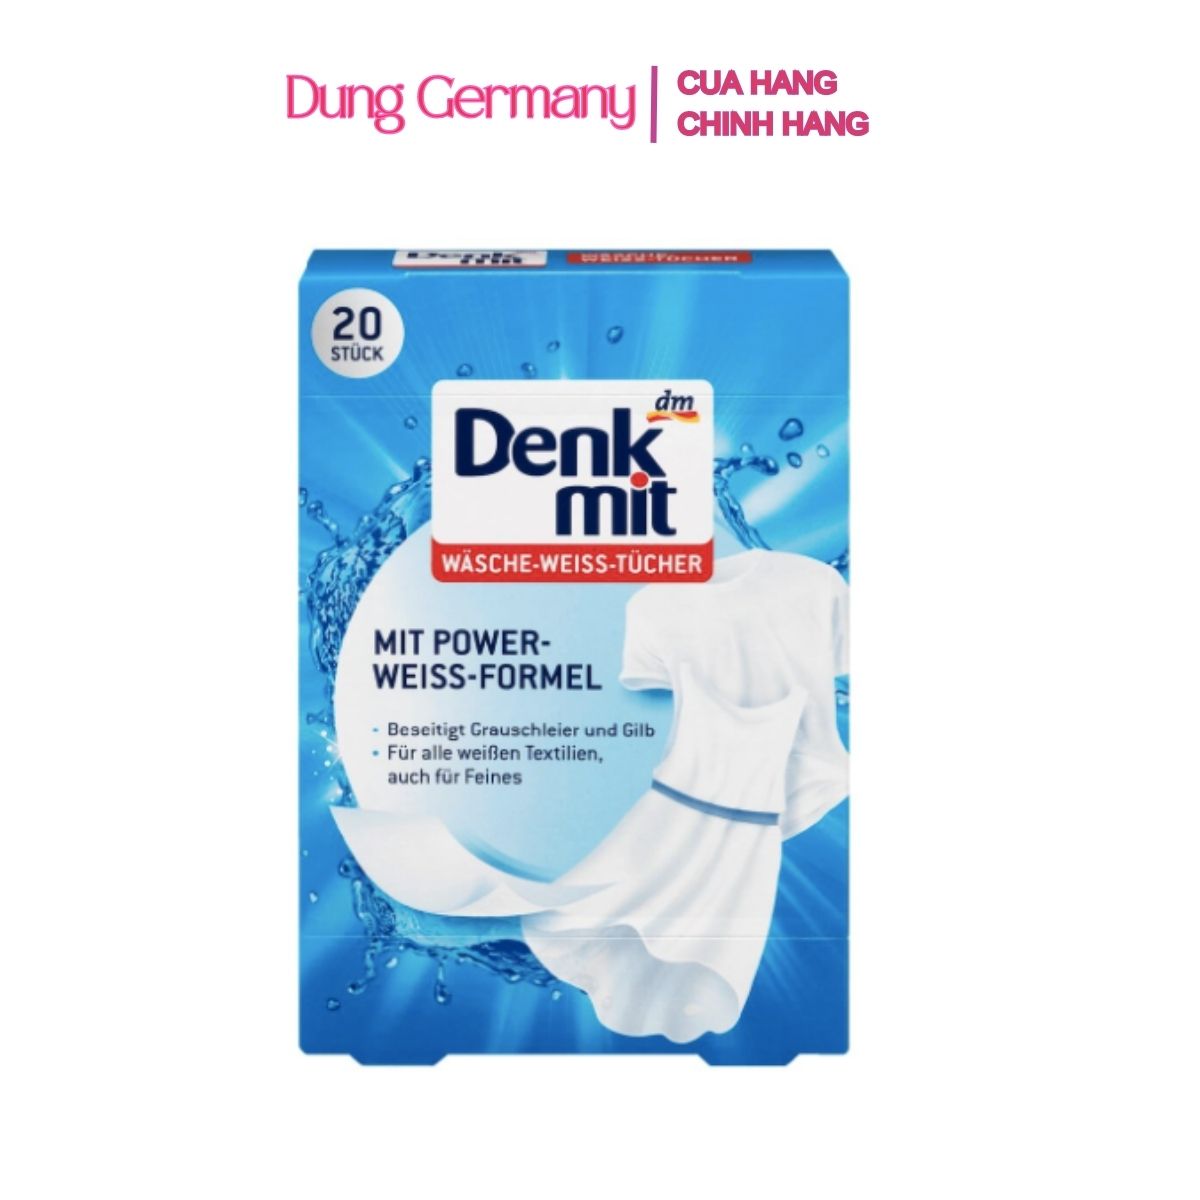 Giấy tẩy trắng quần áo loại bỏ vết bẩn Denkmit 1 hộp 20 tờ - Dung Germany